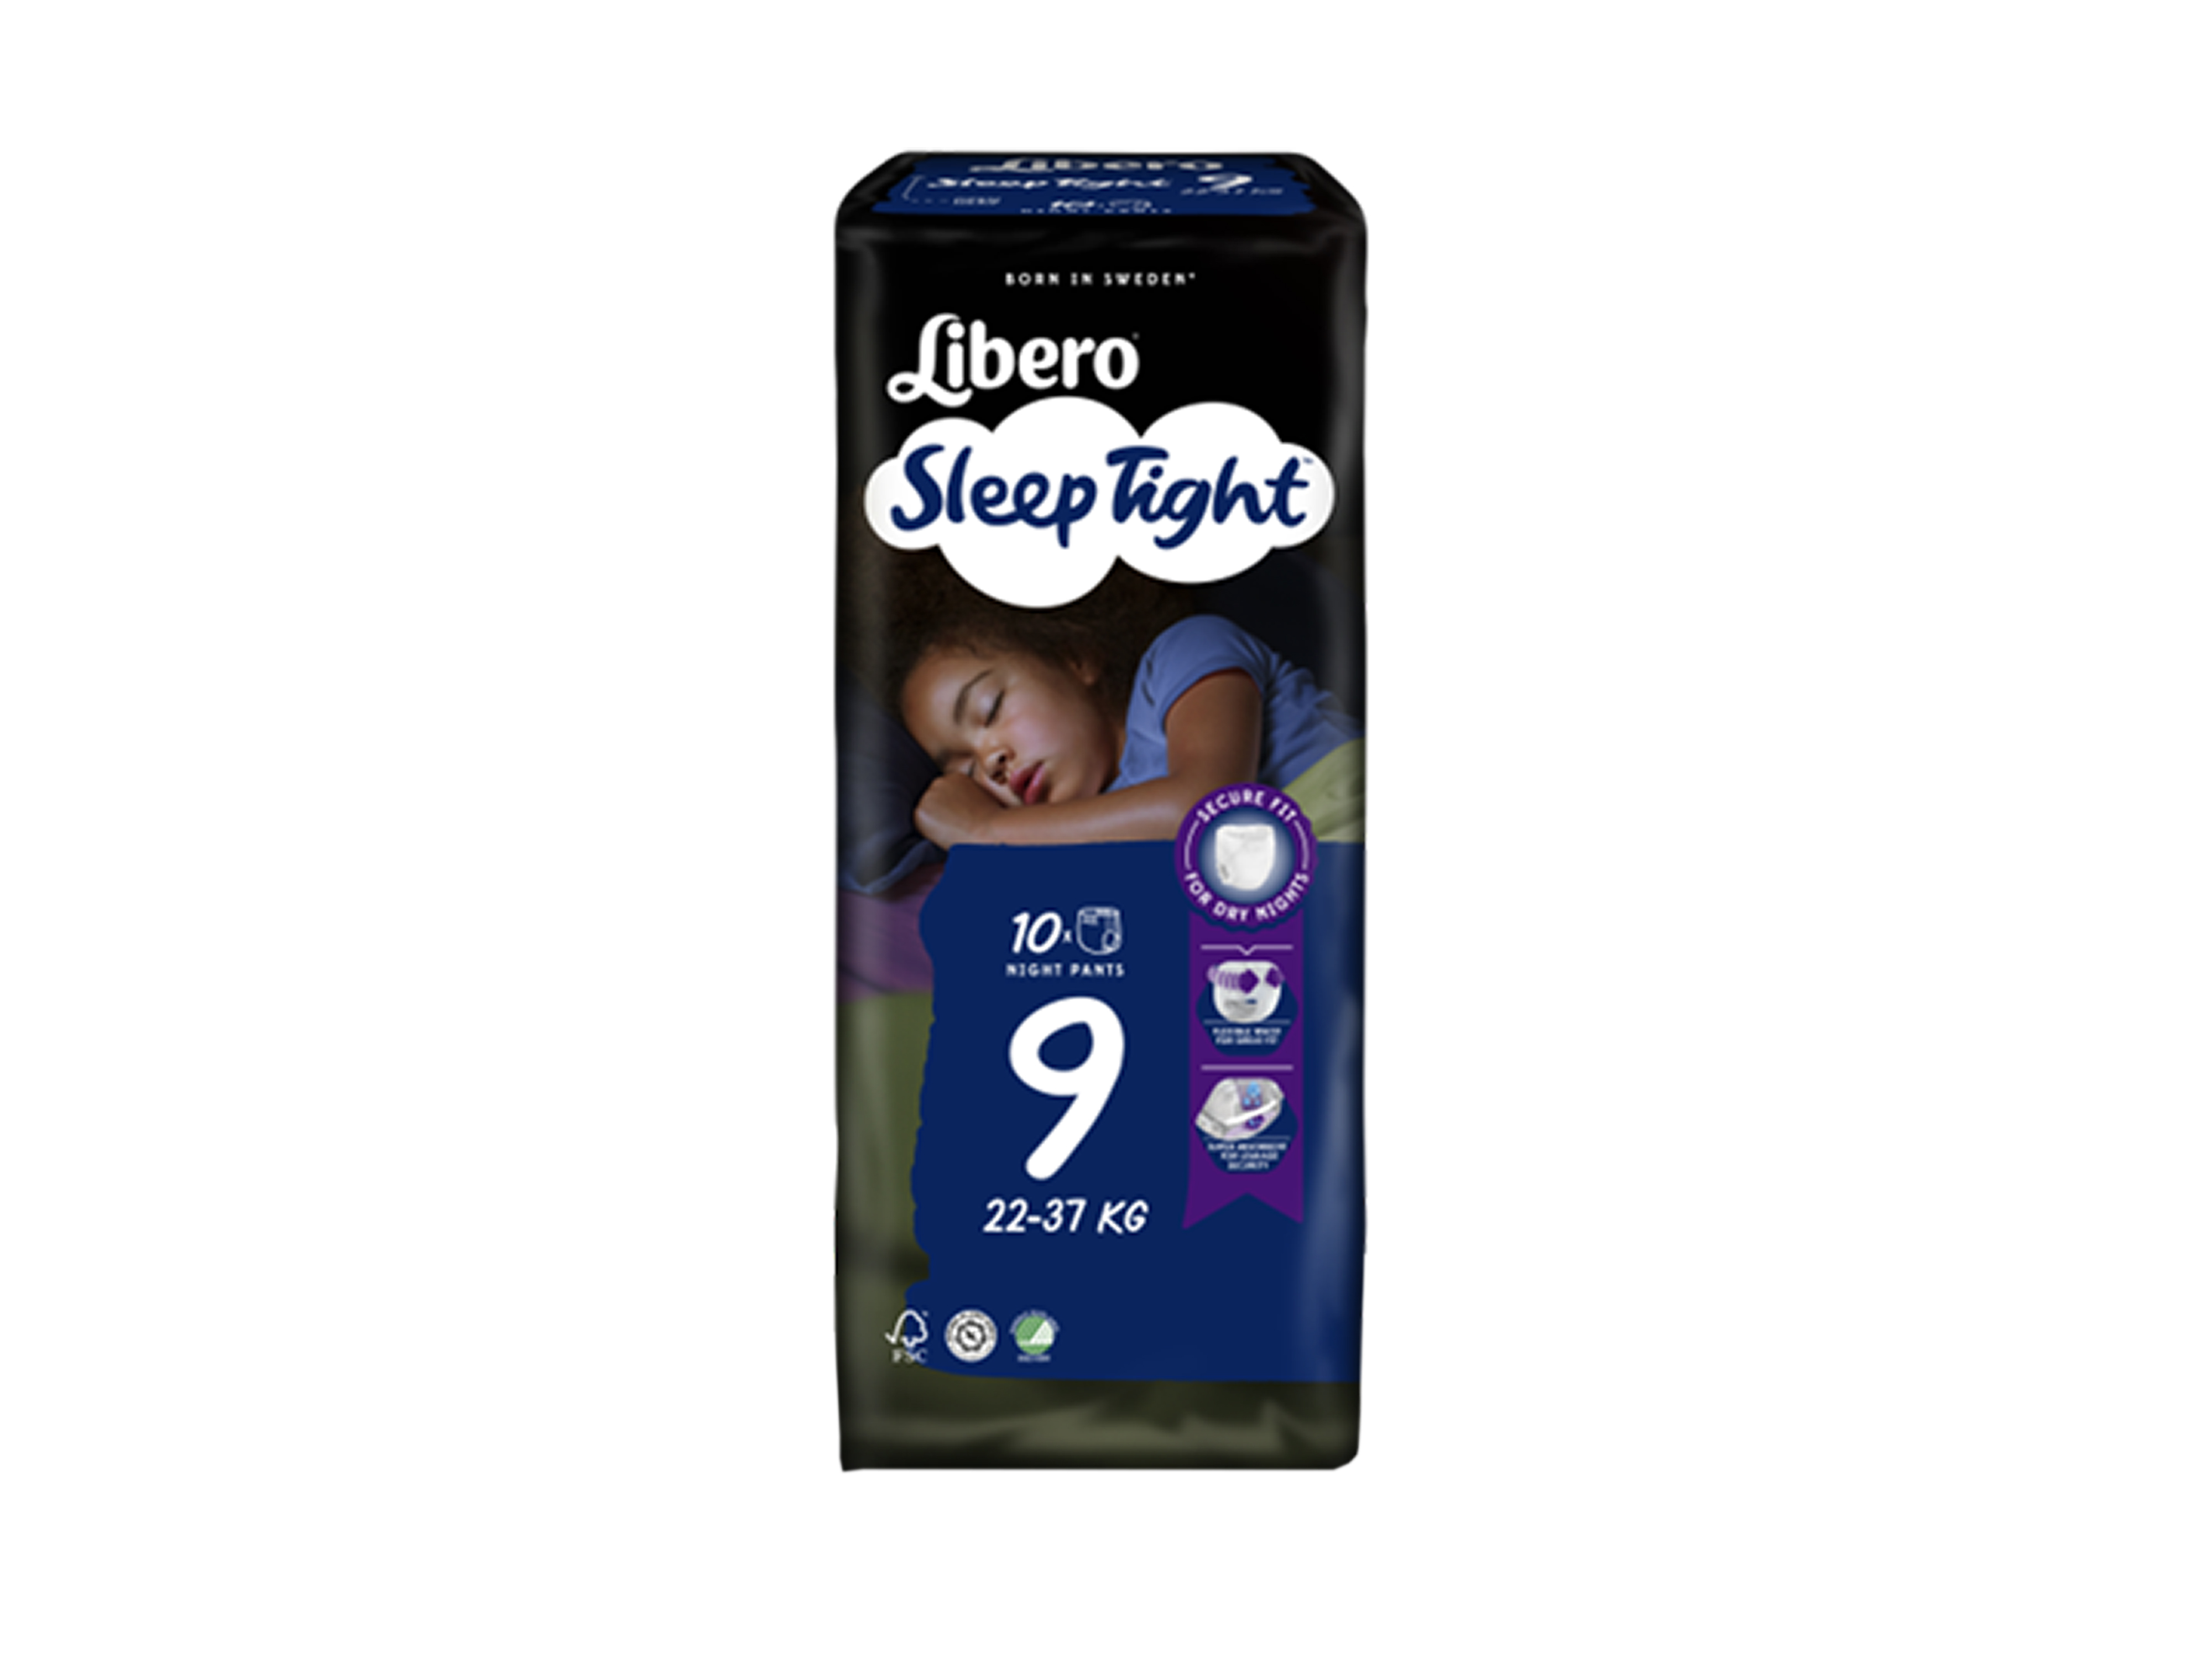 Libero Sleep Tight 9, 20-37 kg, 10 stk.